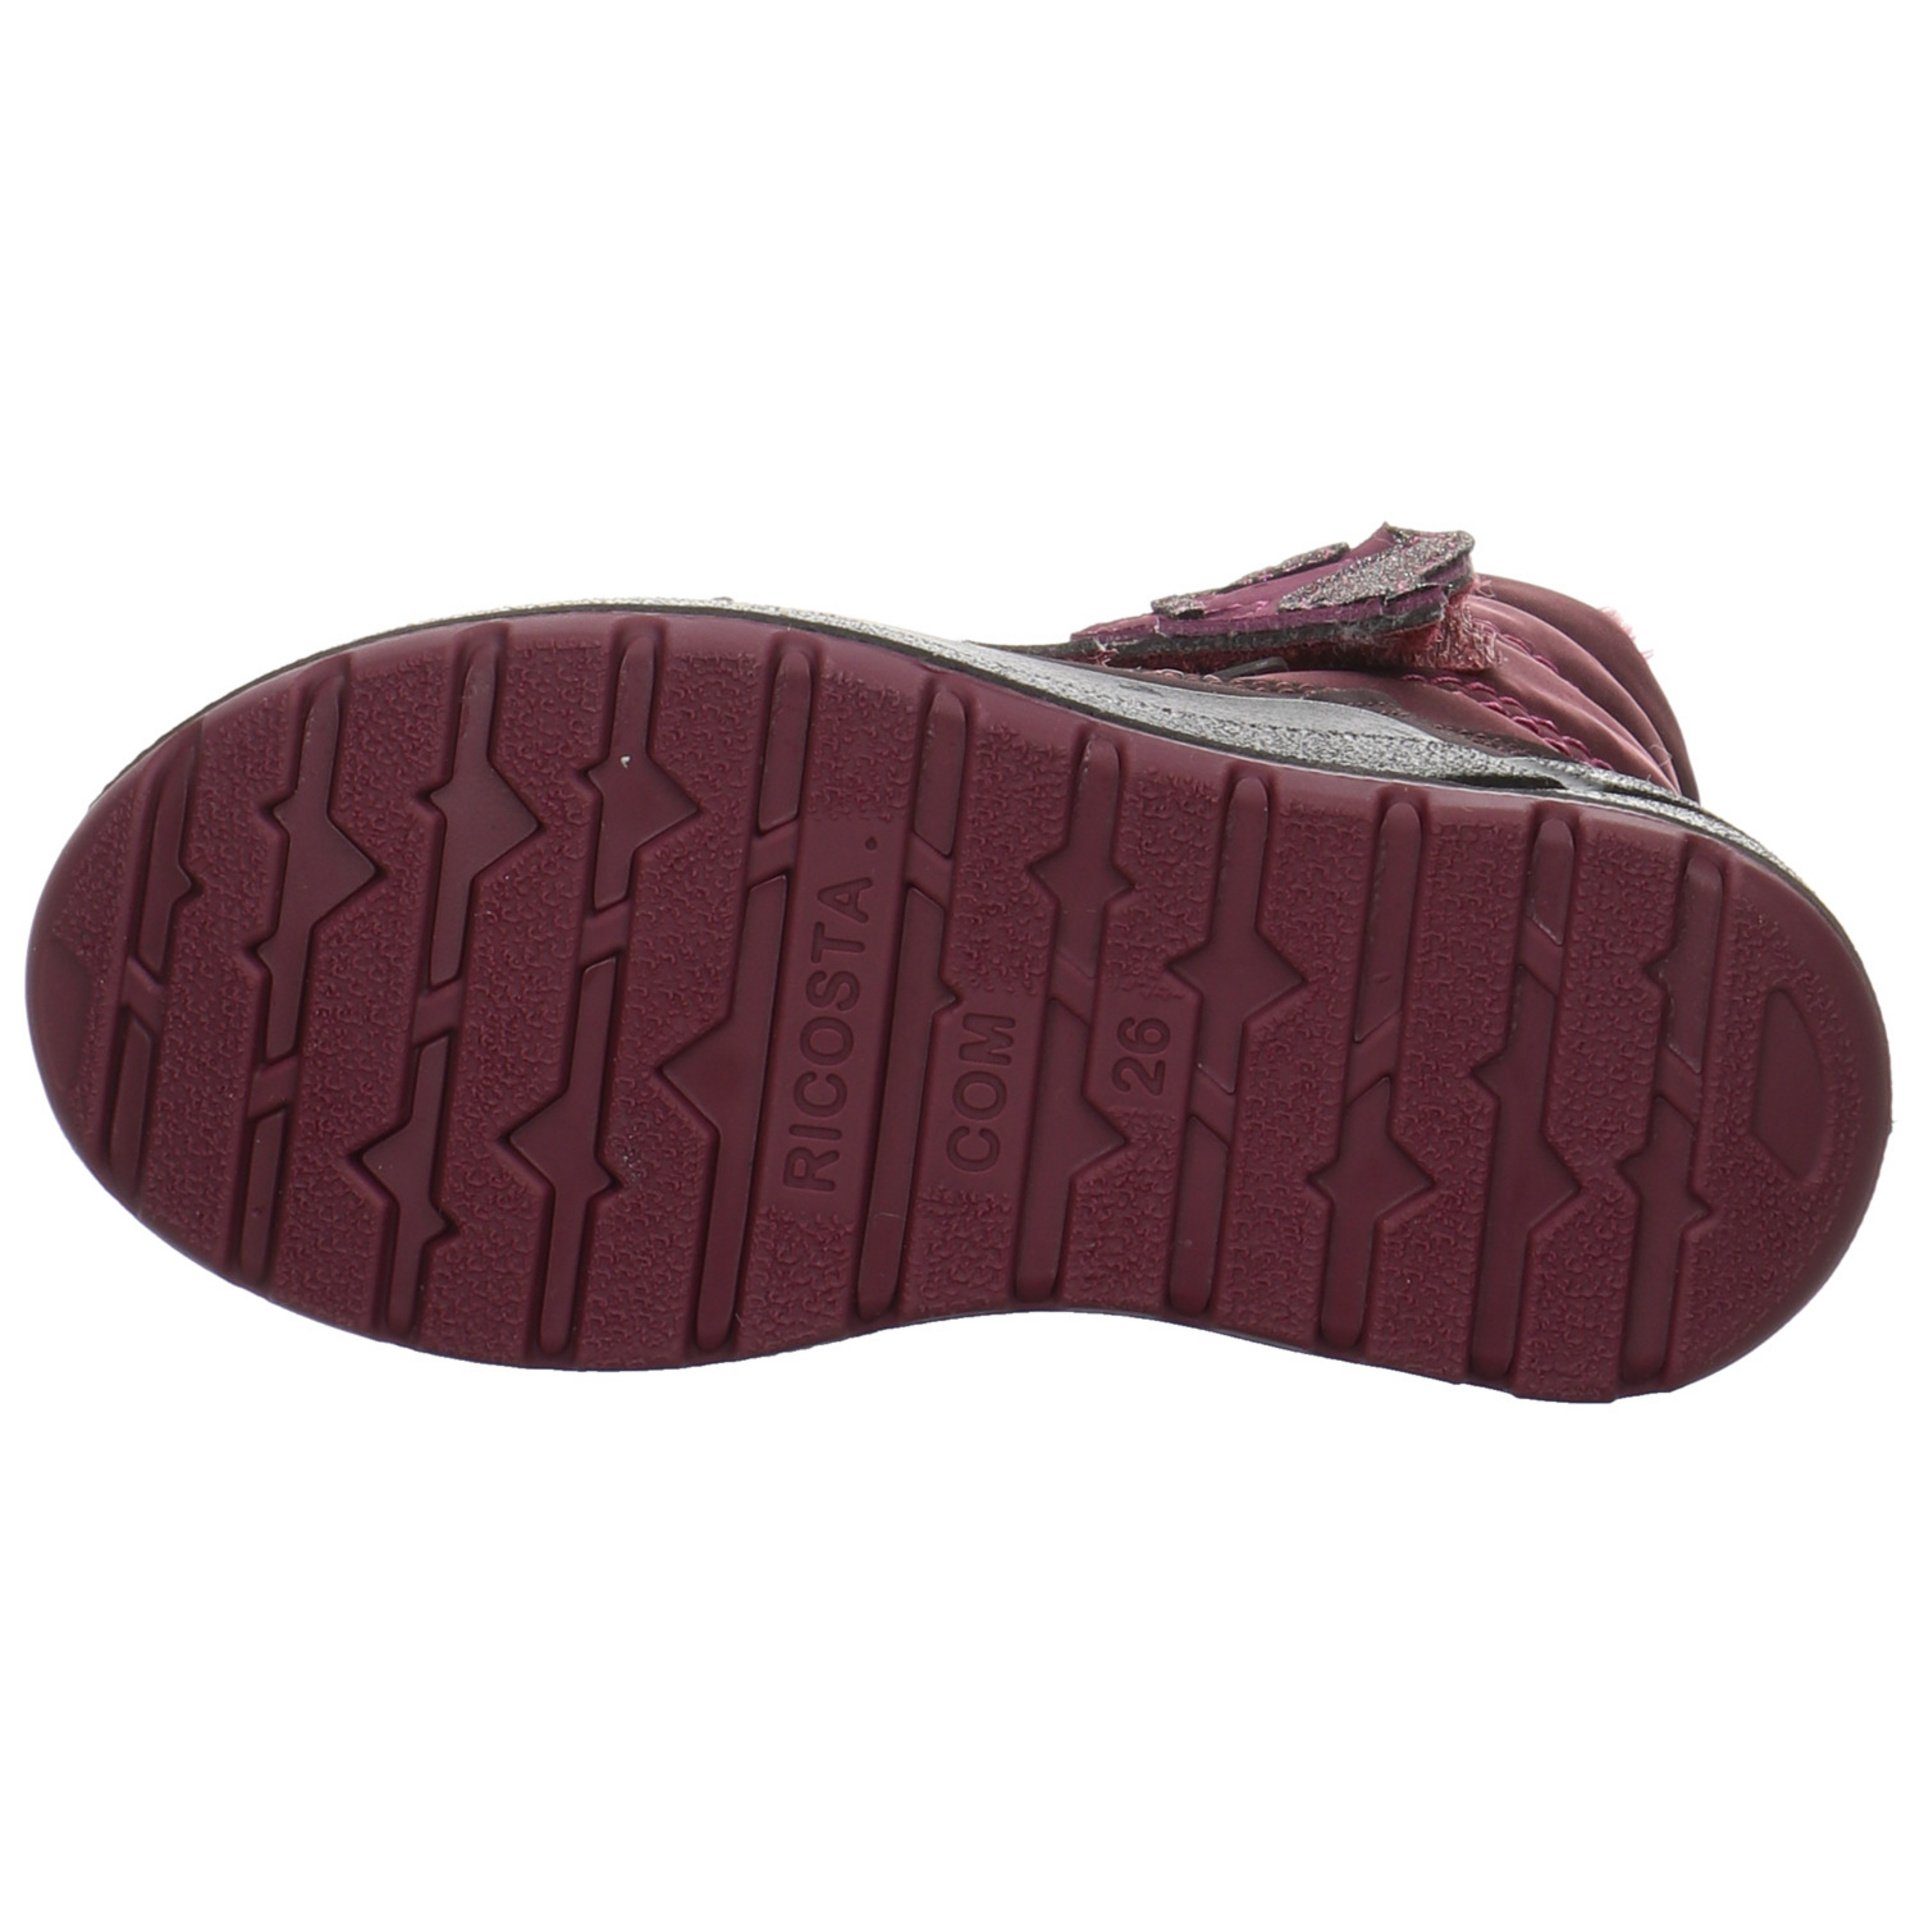 Textil Ricosta Boots Garei Bordeaux Stiefel uni Textil